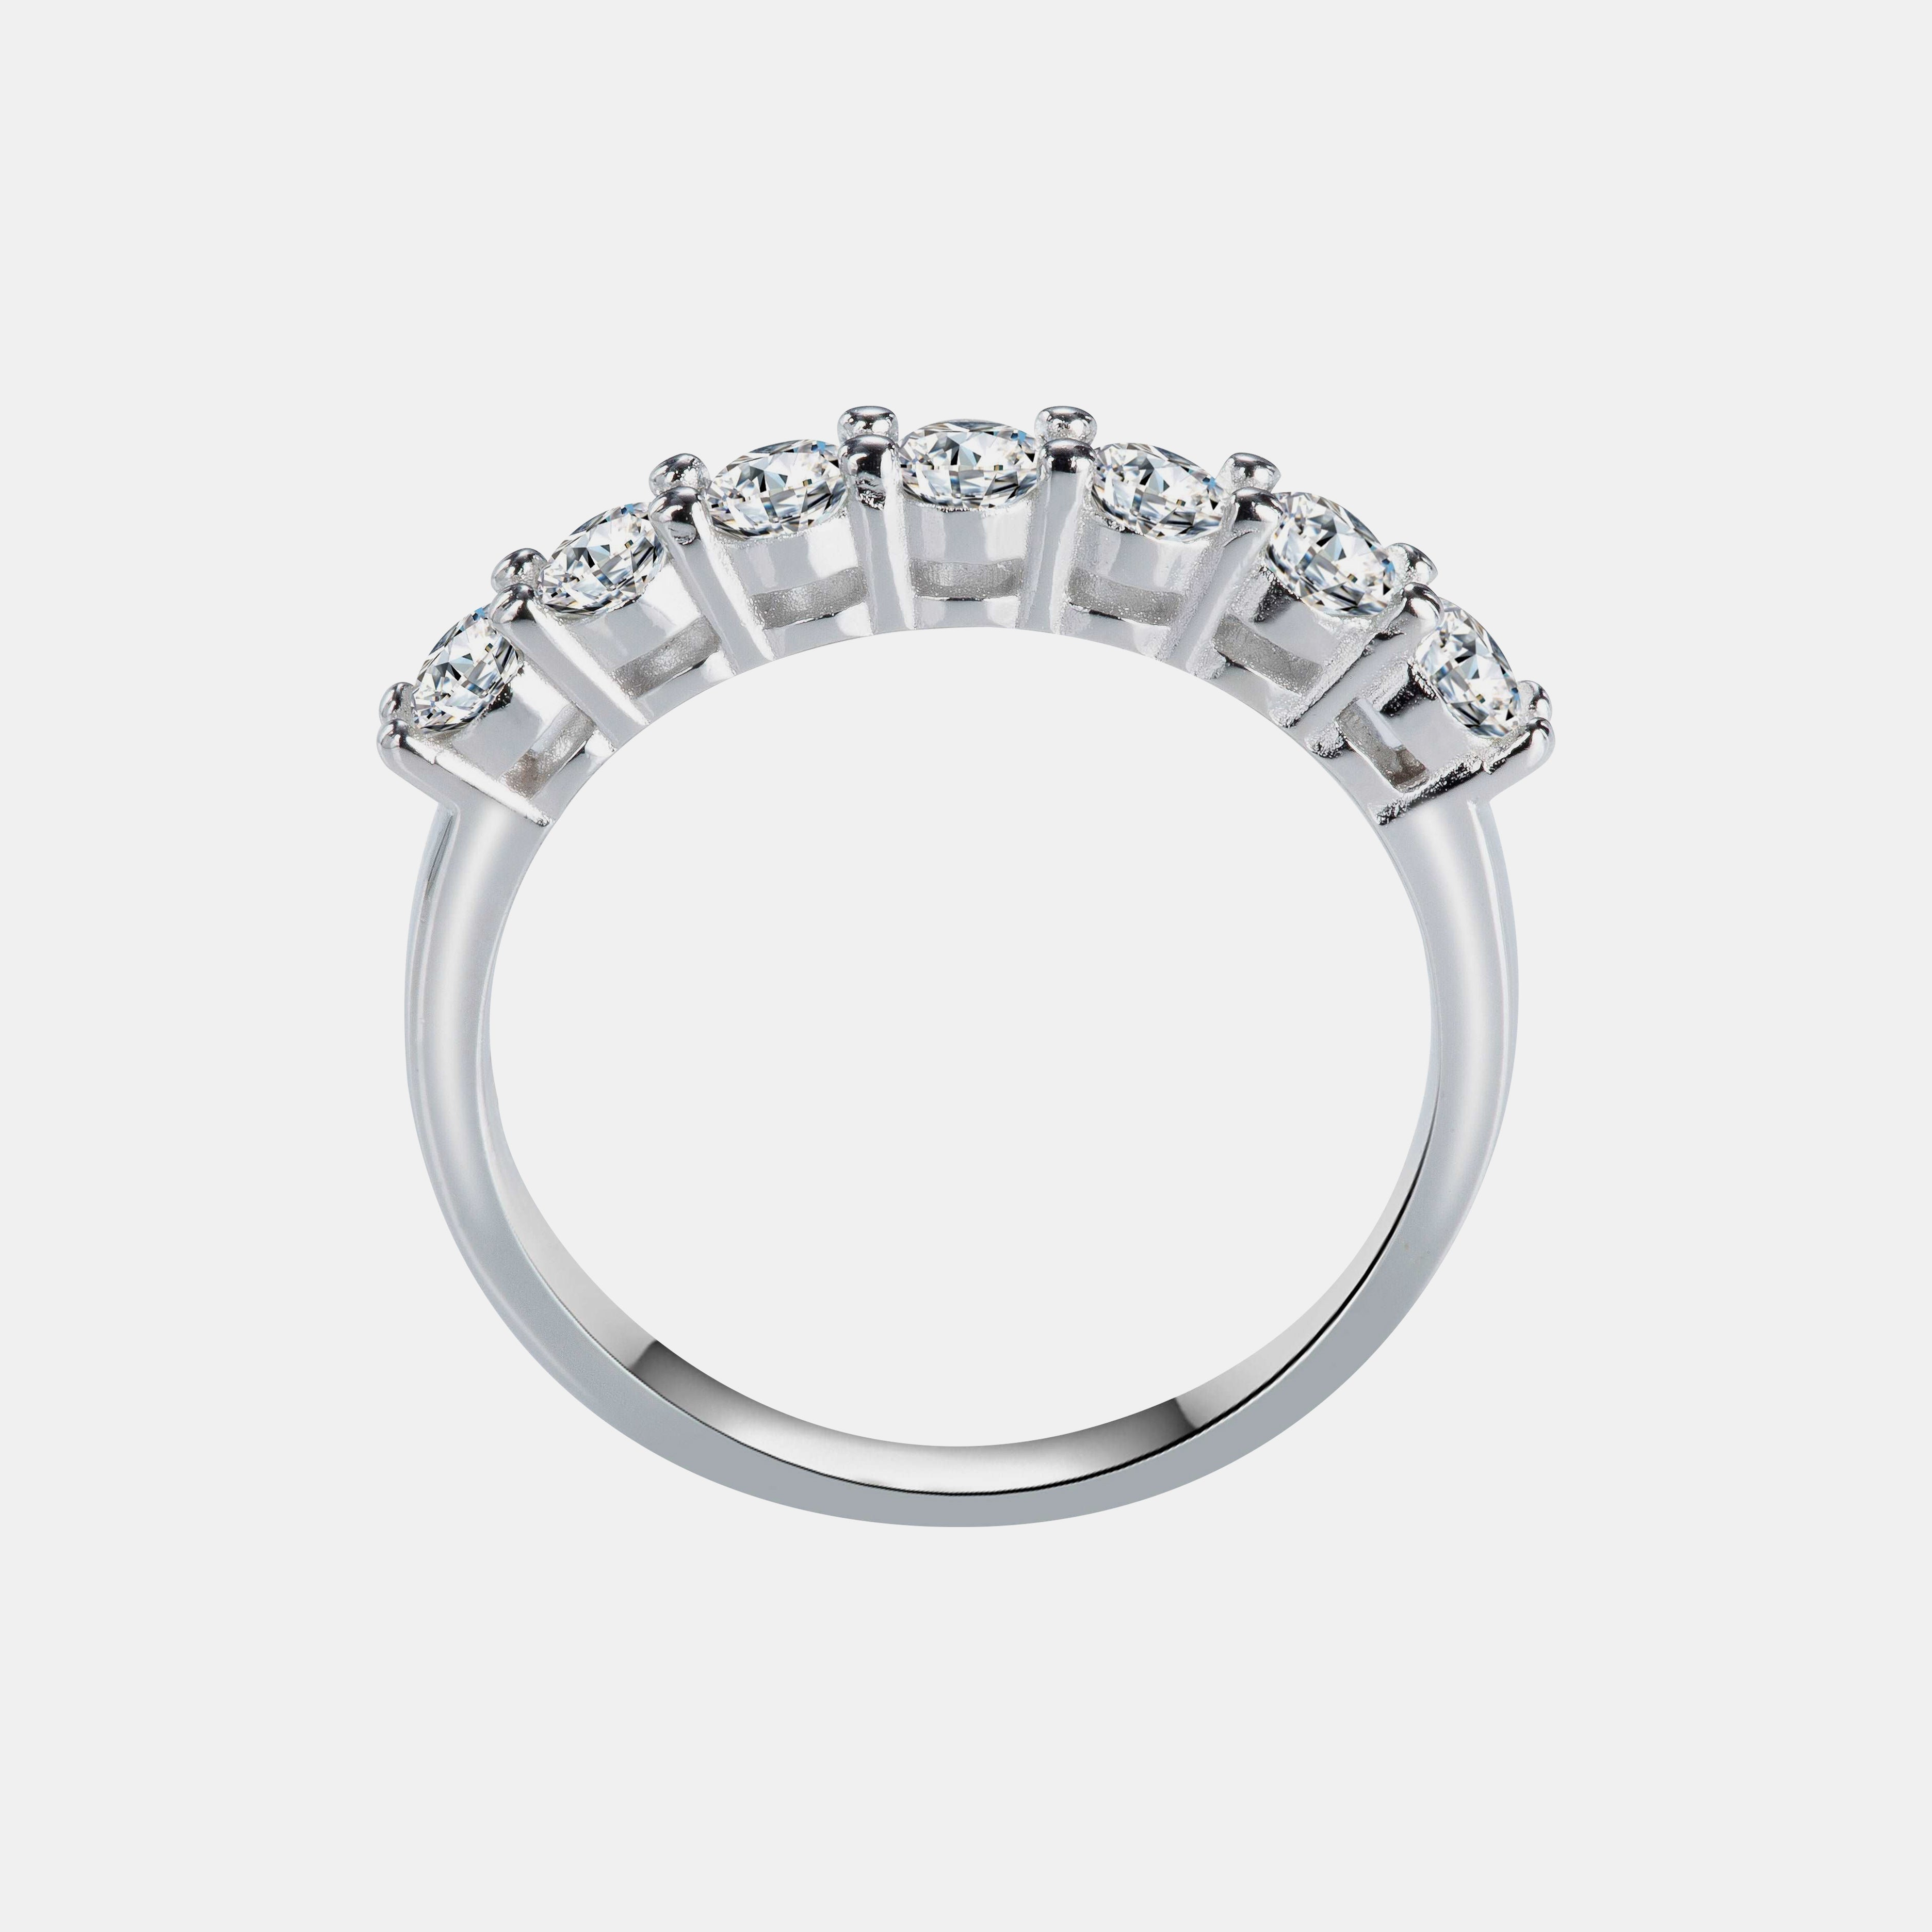 【#27】925 Sterling Silver Moissanite Ring